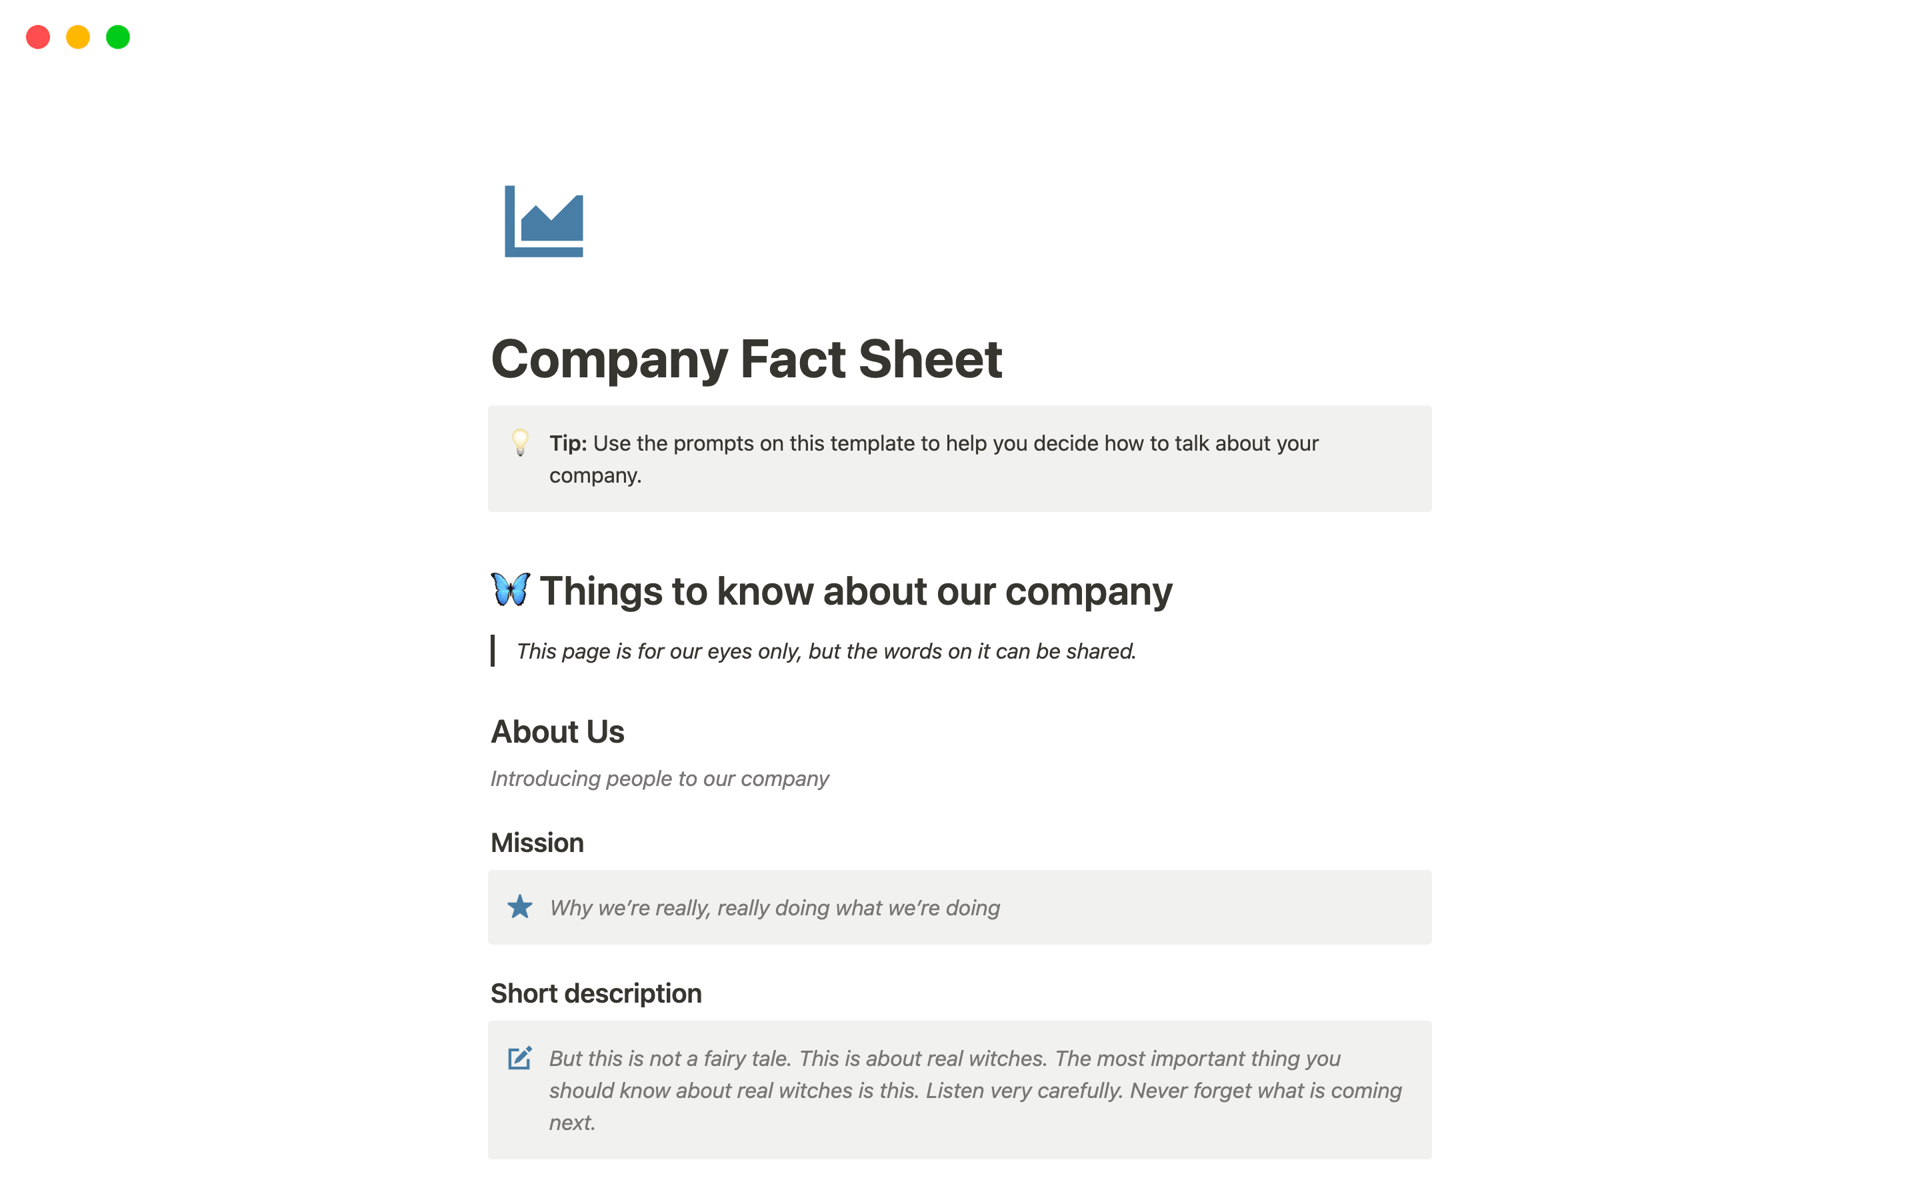 Vista previa de una plantilla para Company Fact Sheet